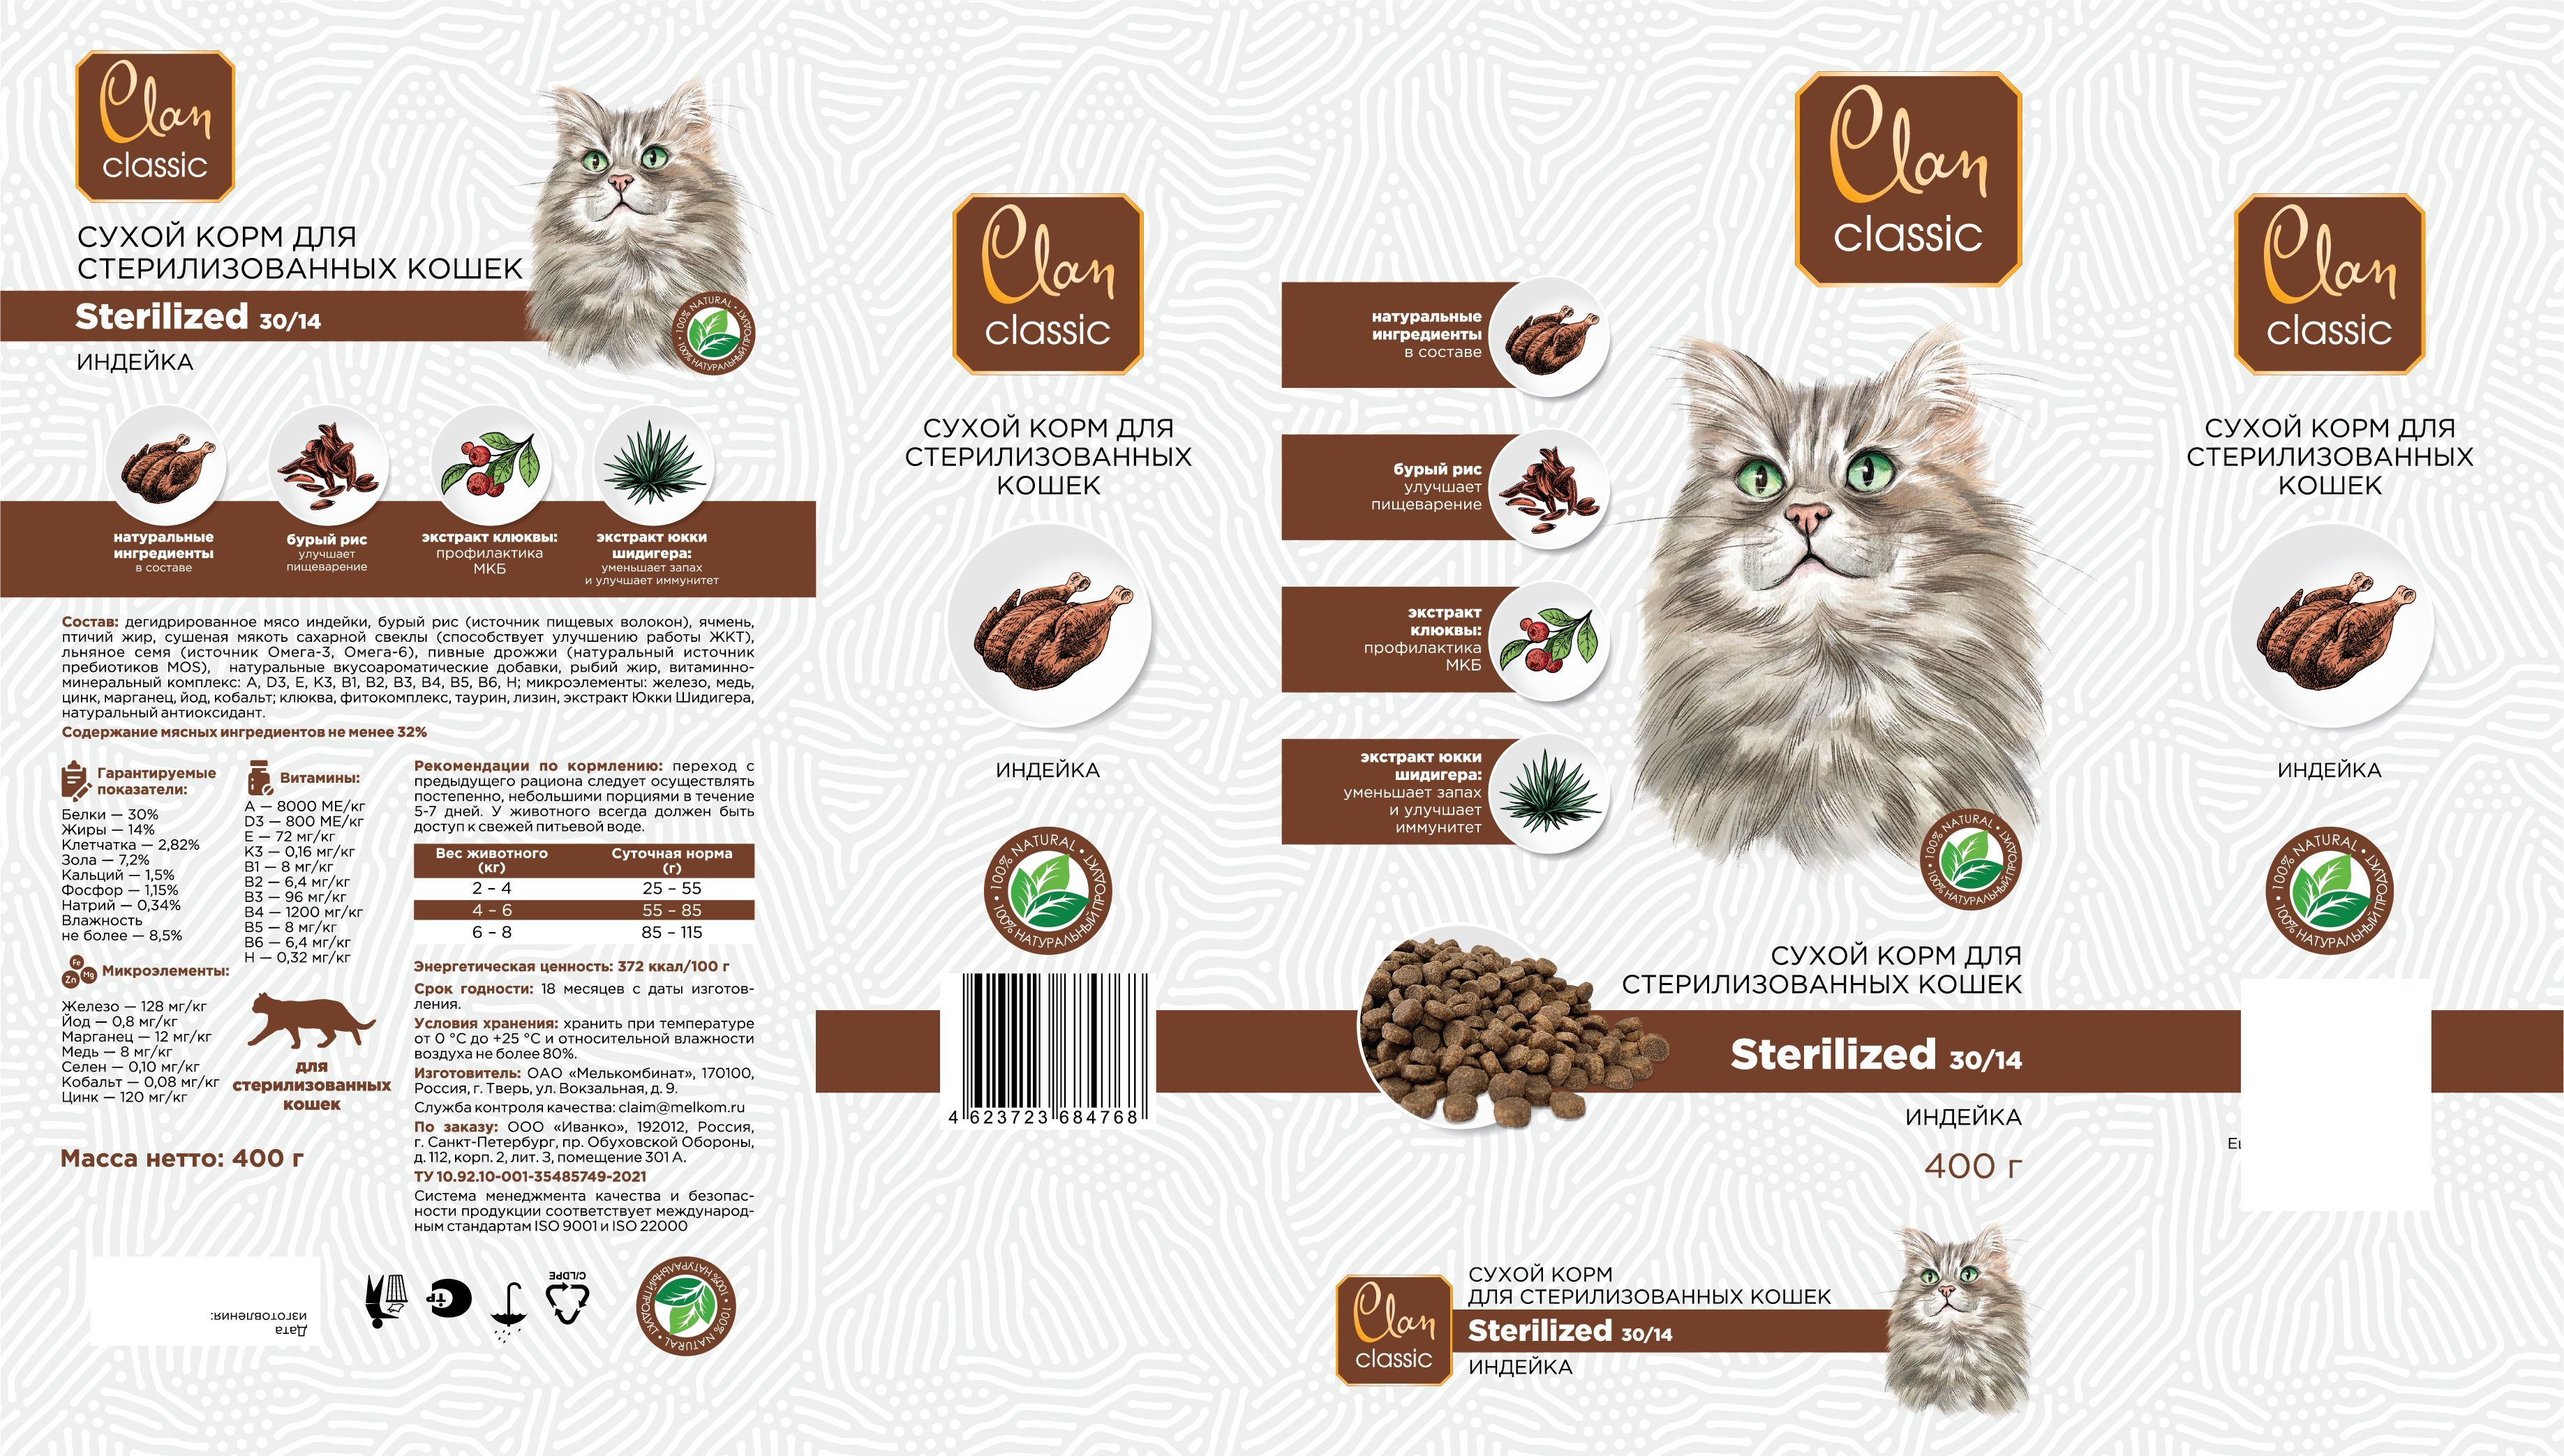 Clan classic для кошек. Корм Clan Classic. Корм Clan Classic Sterilized 30/14 для стерилизованных кошек, с индейкой. Clan Classic Sterilized-30/14 корм для стерилизованных кошек (индейка ), 400 г. Clan Classic сухой корм для кошек.